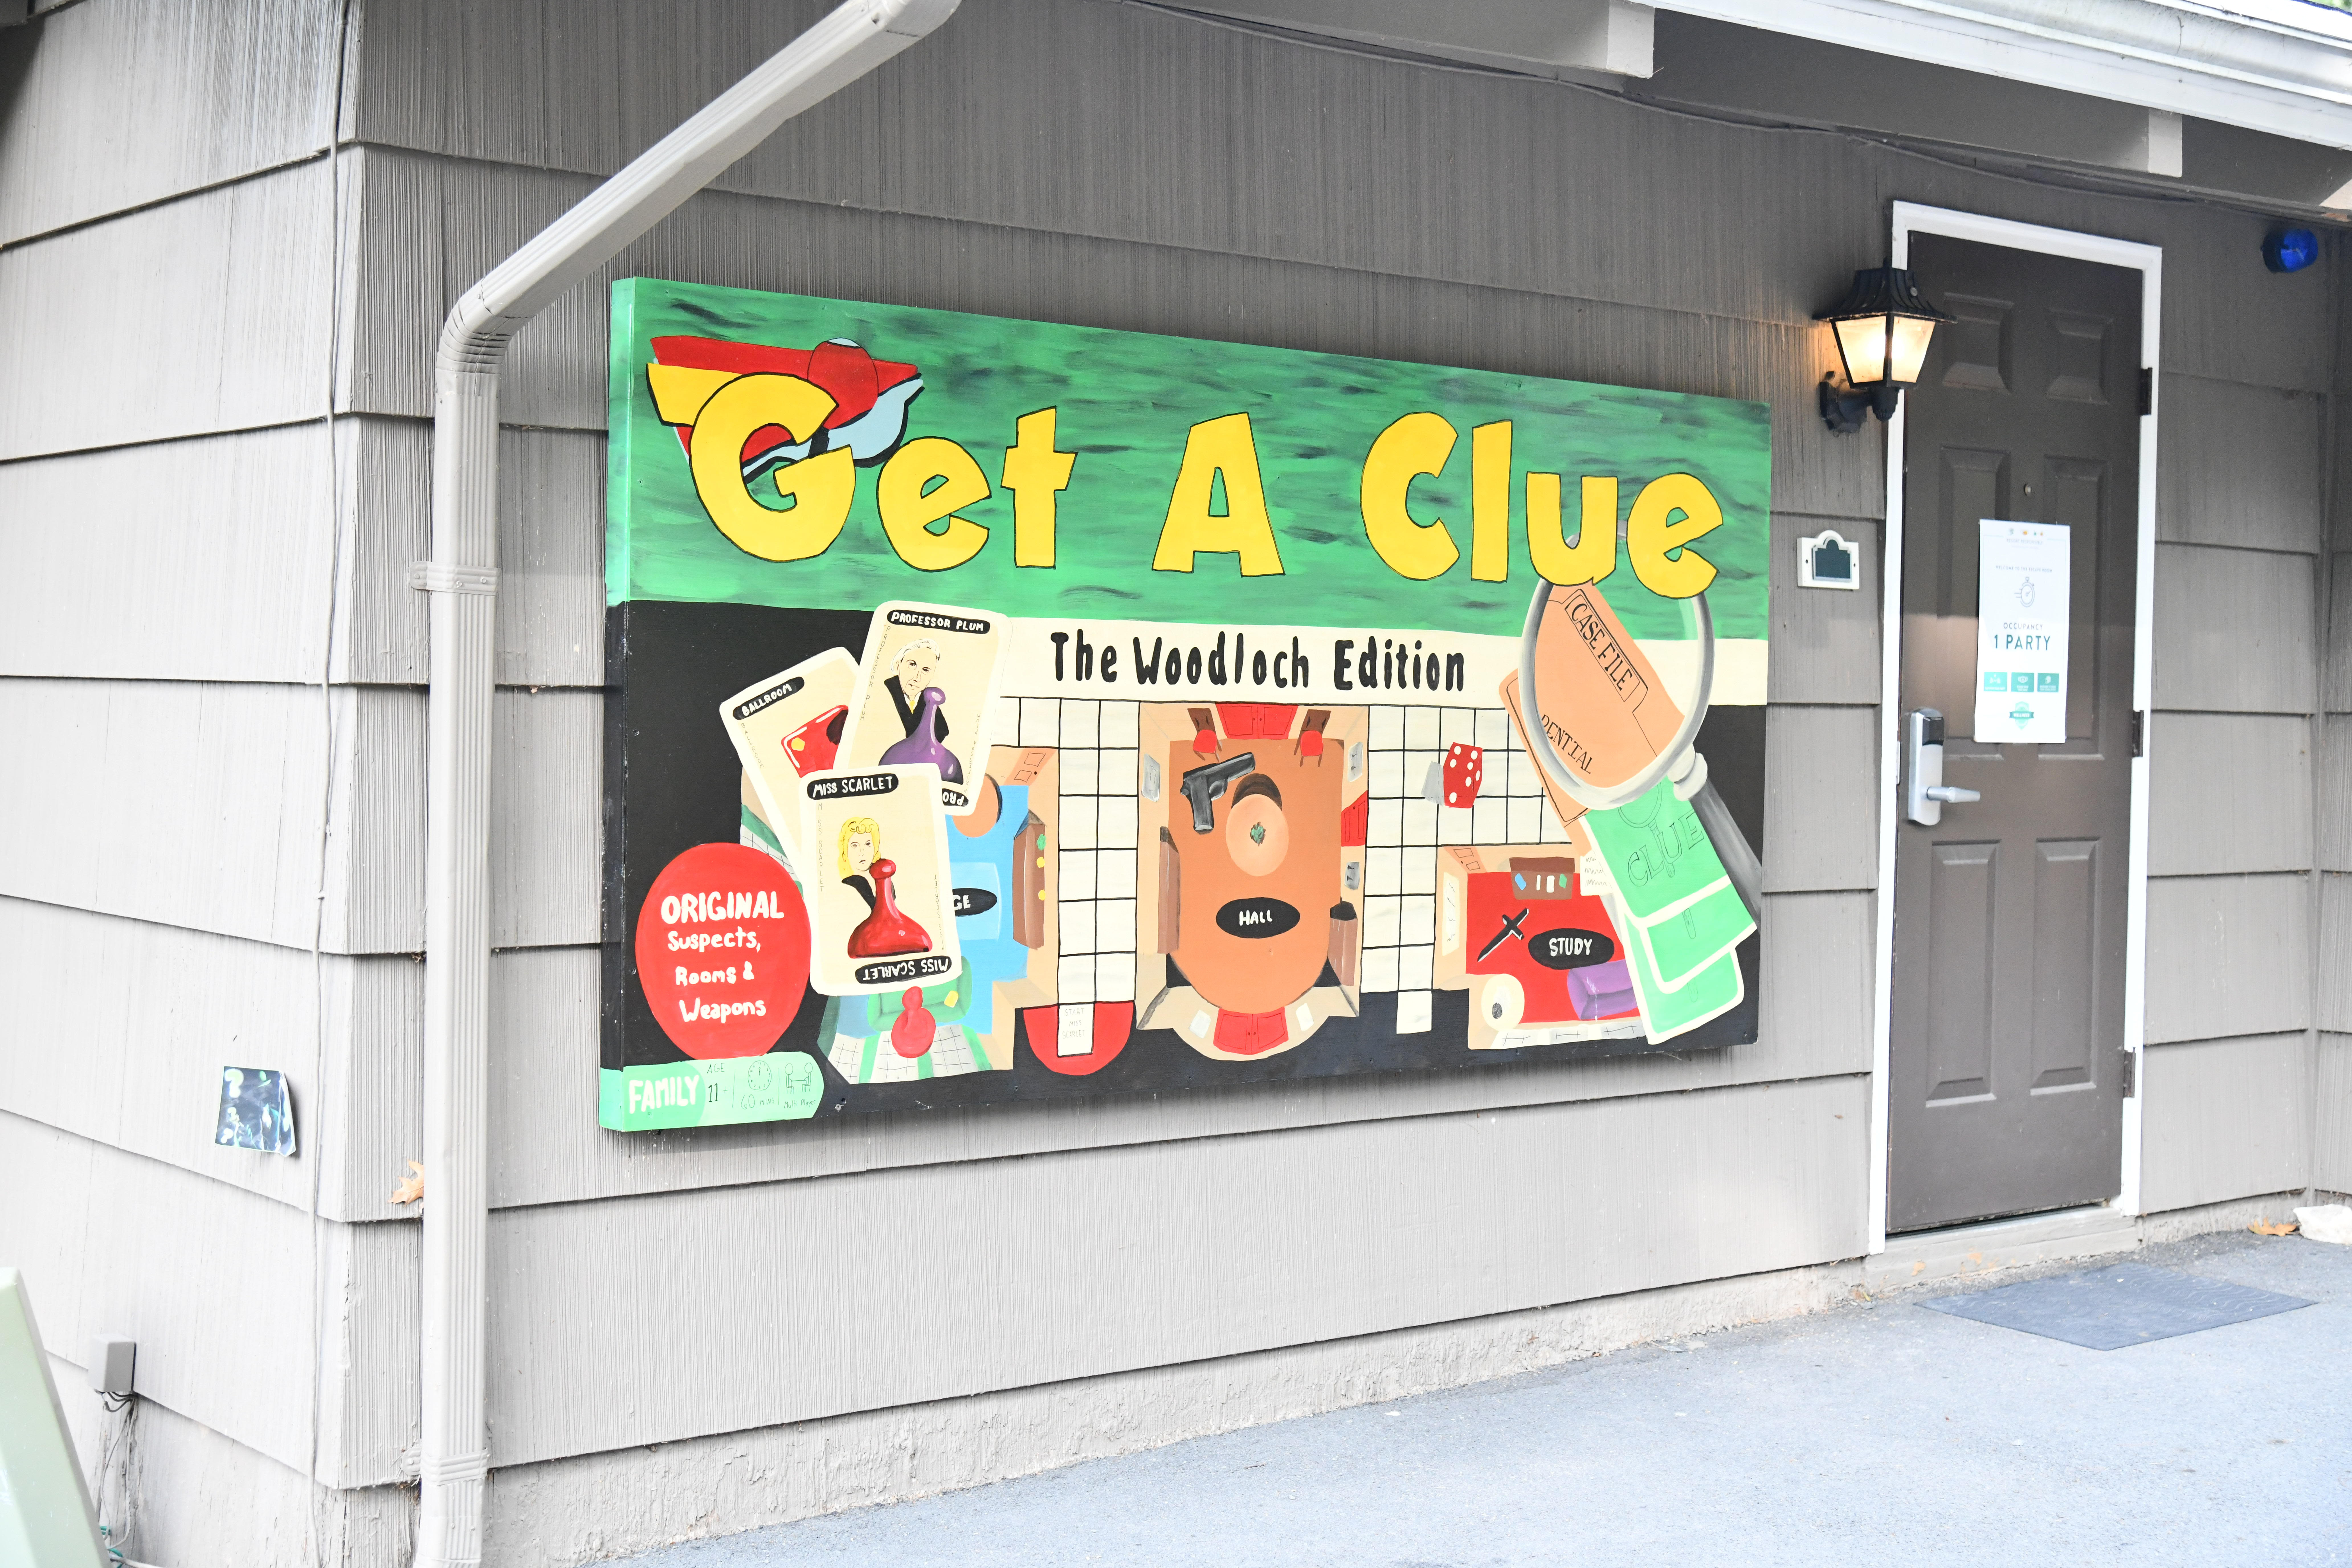 Get A clue sign on side of building at Woodloch Resort Poconos